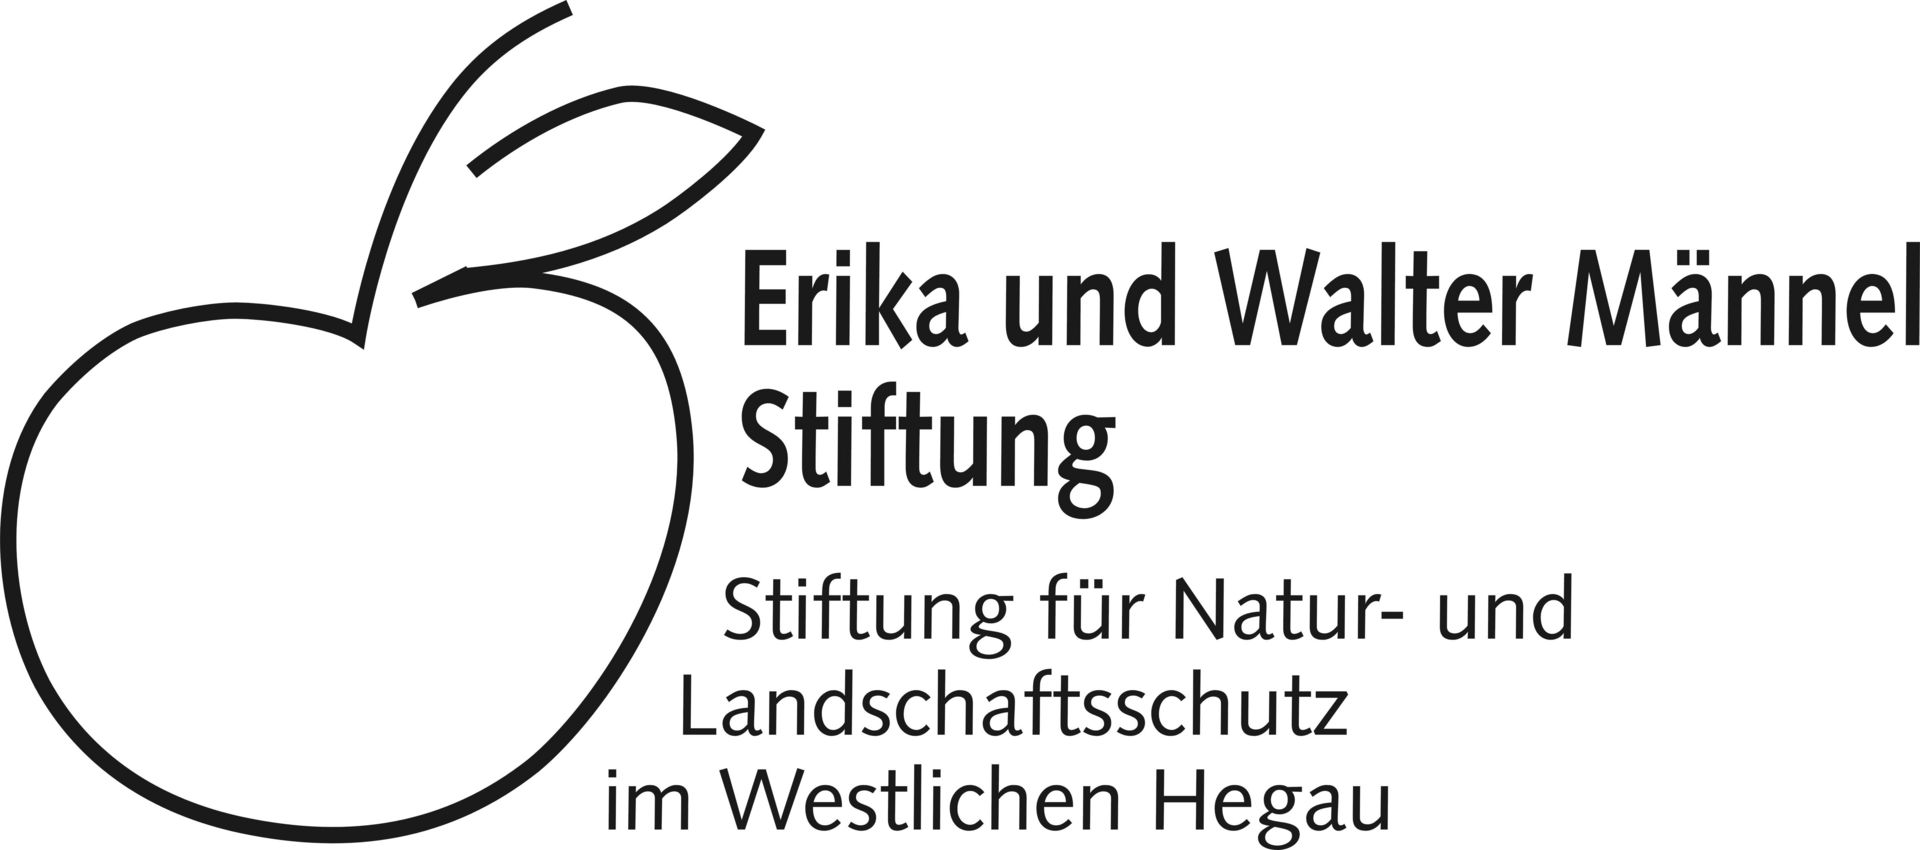 Das Bild zeigt das Logo der Erika und Walter Männel-Stiftung.